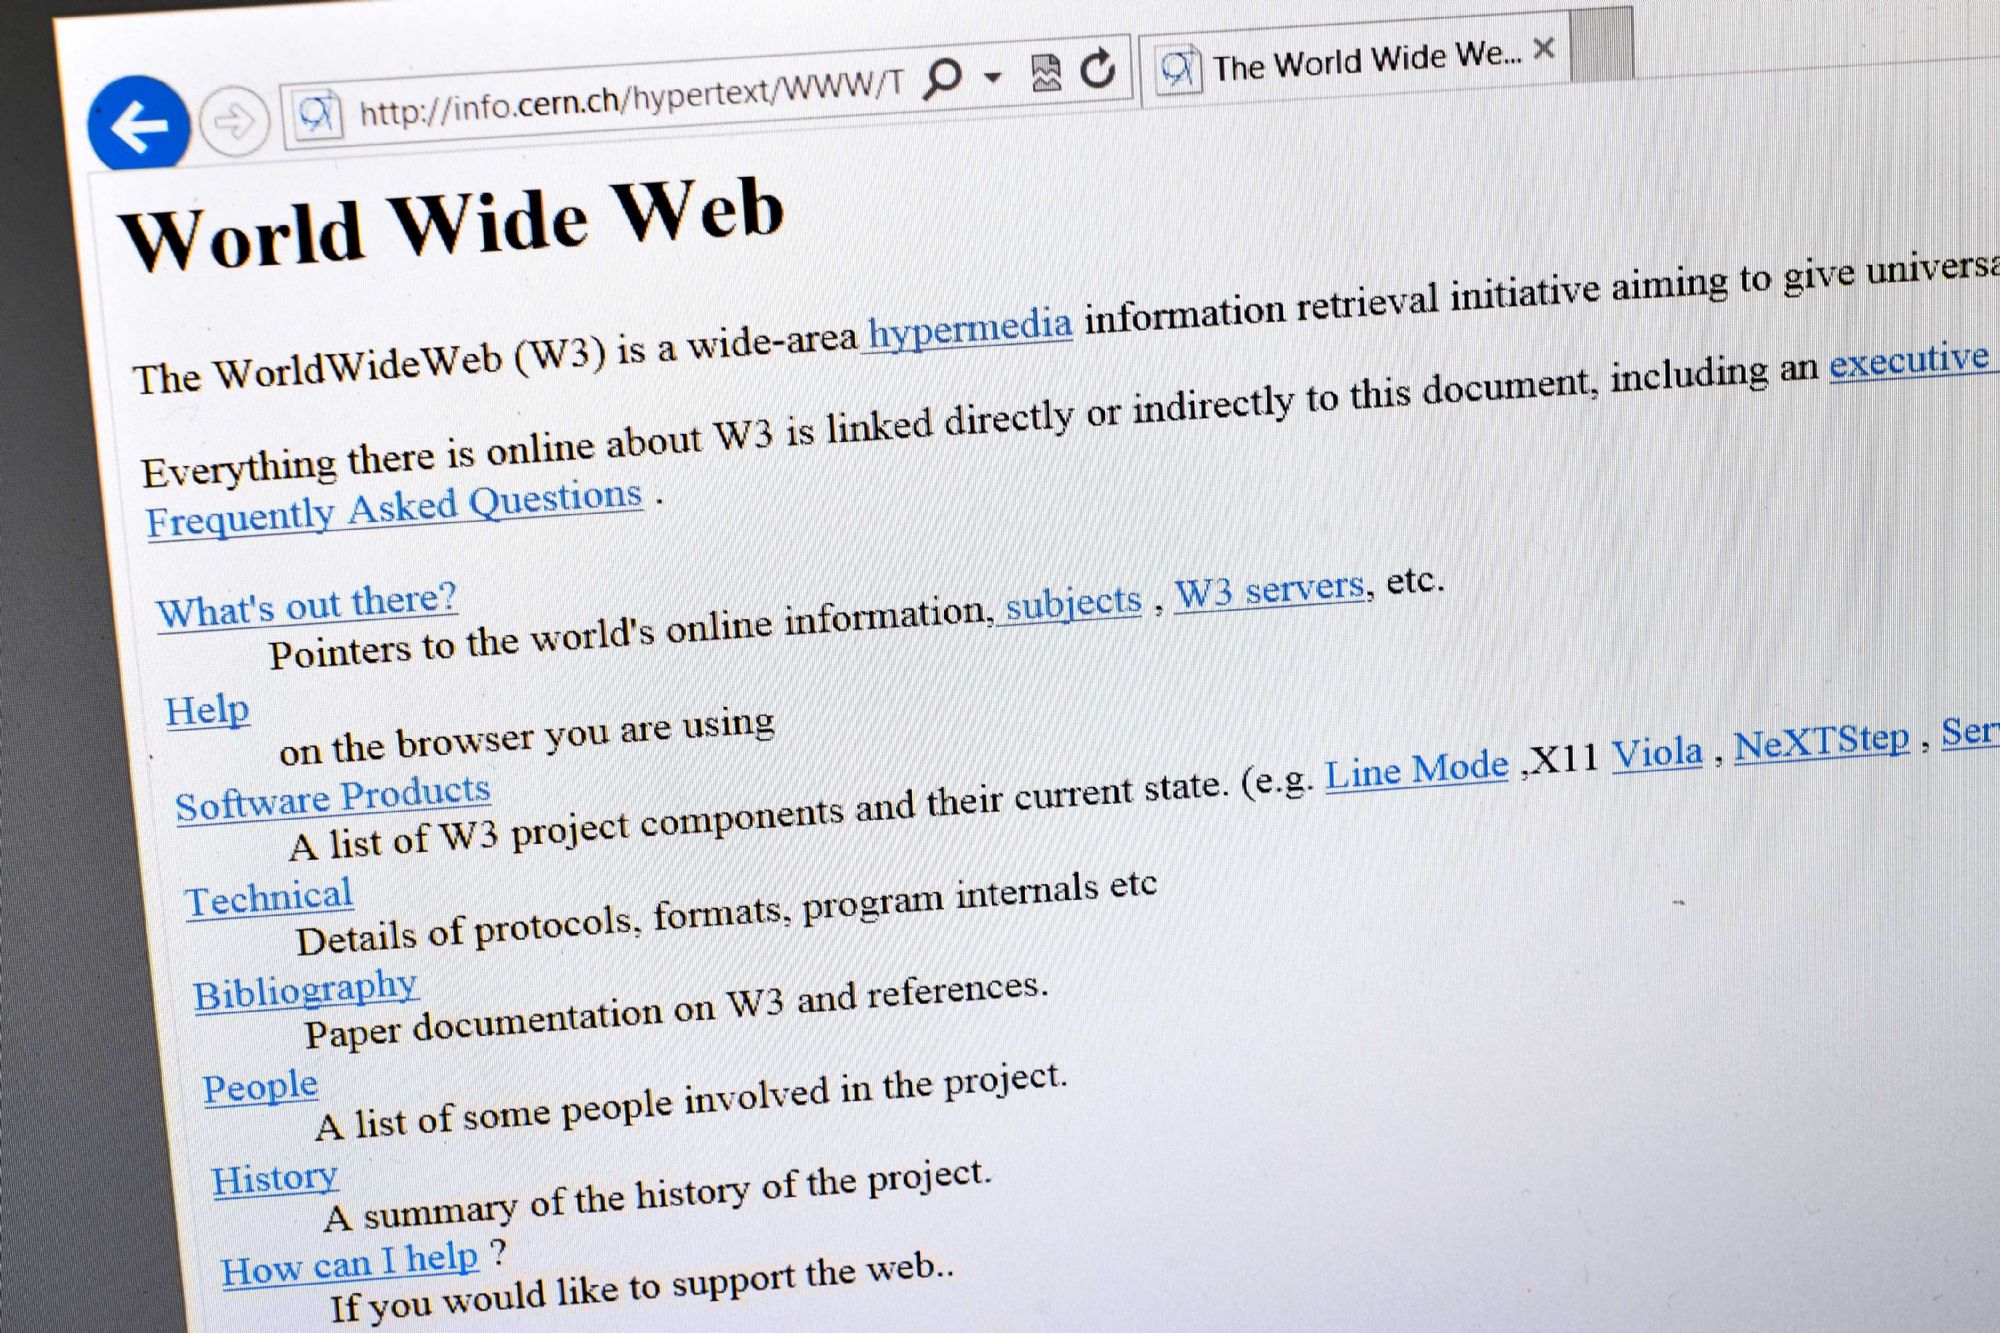 نسخة من صفحة الويب الأولى في العالم